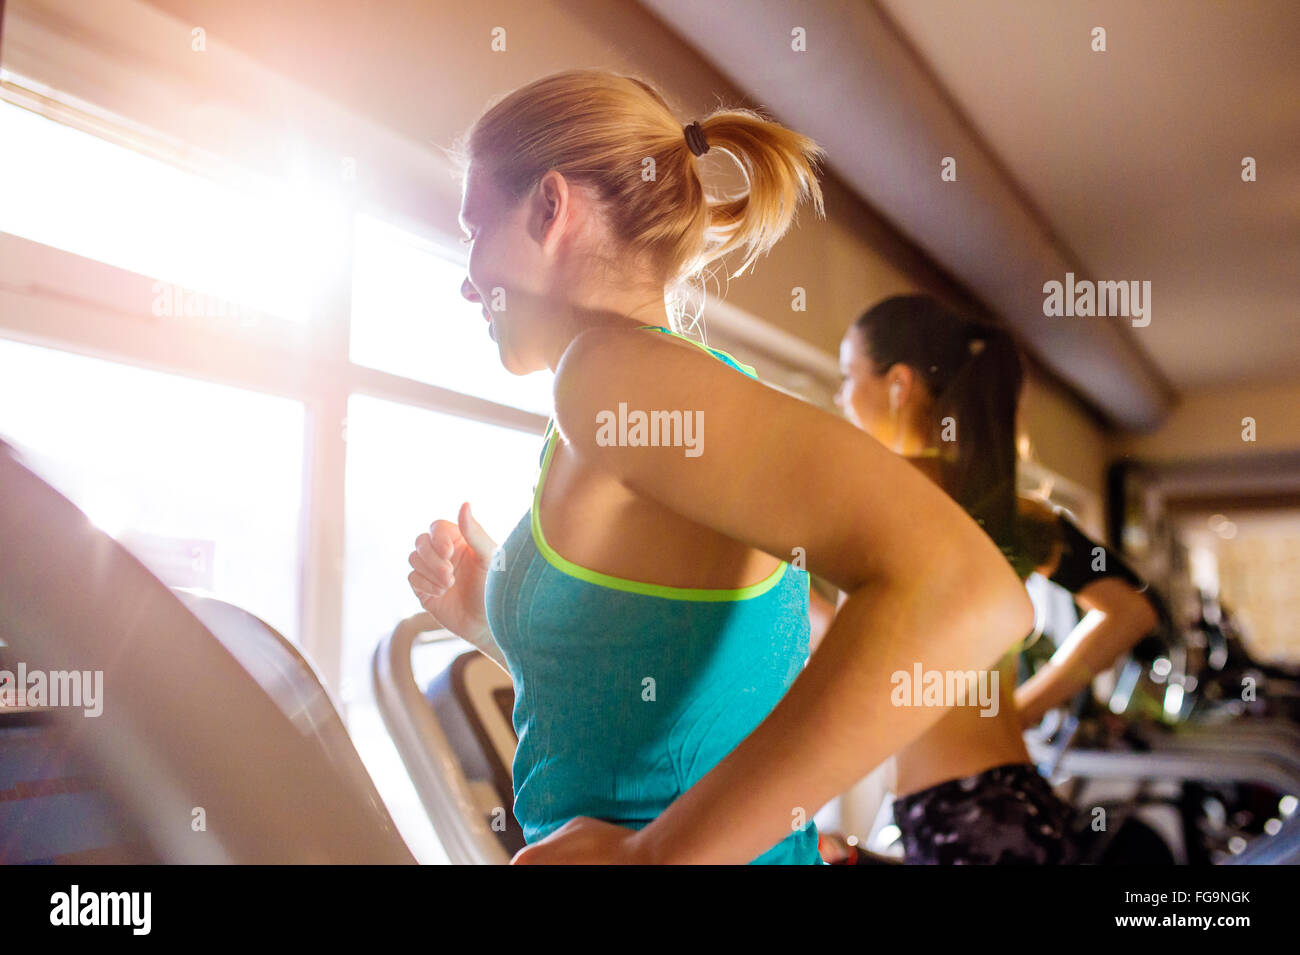 Colocar dos mujeres corriendo en cintas de correr en el gimnasio moderno Foto de stock